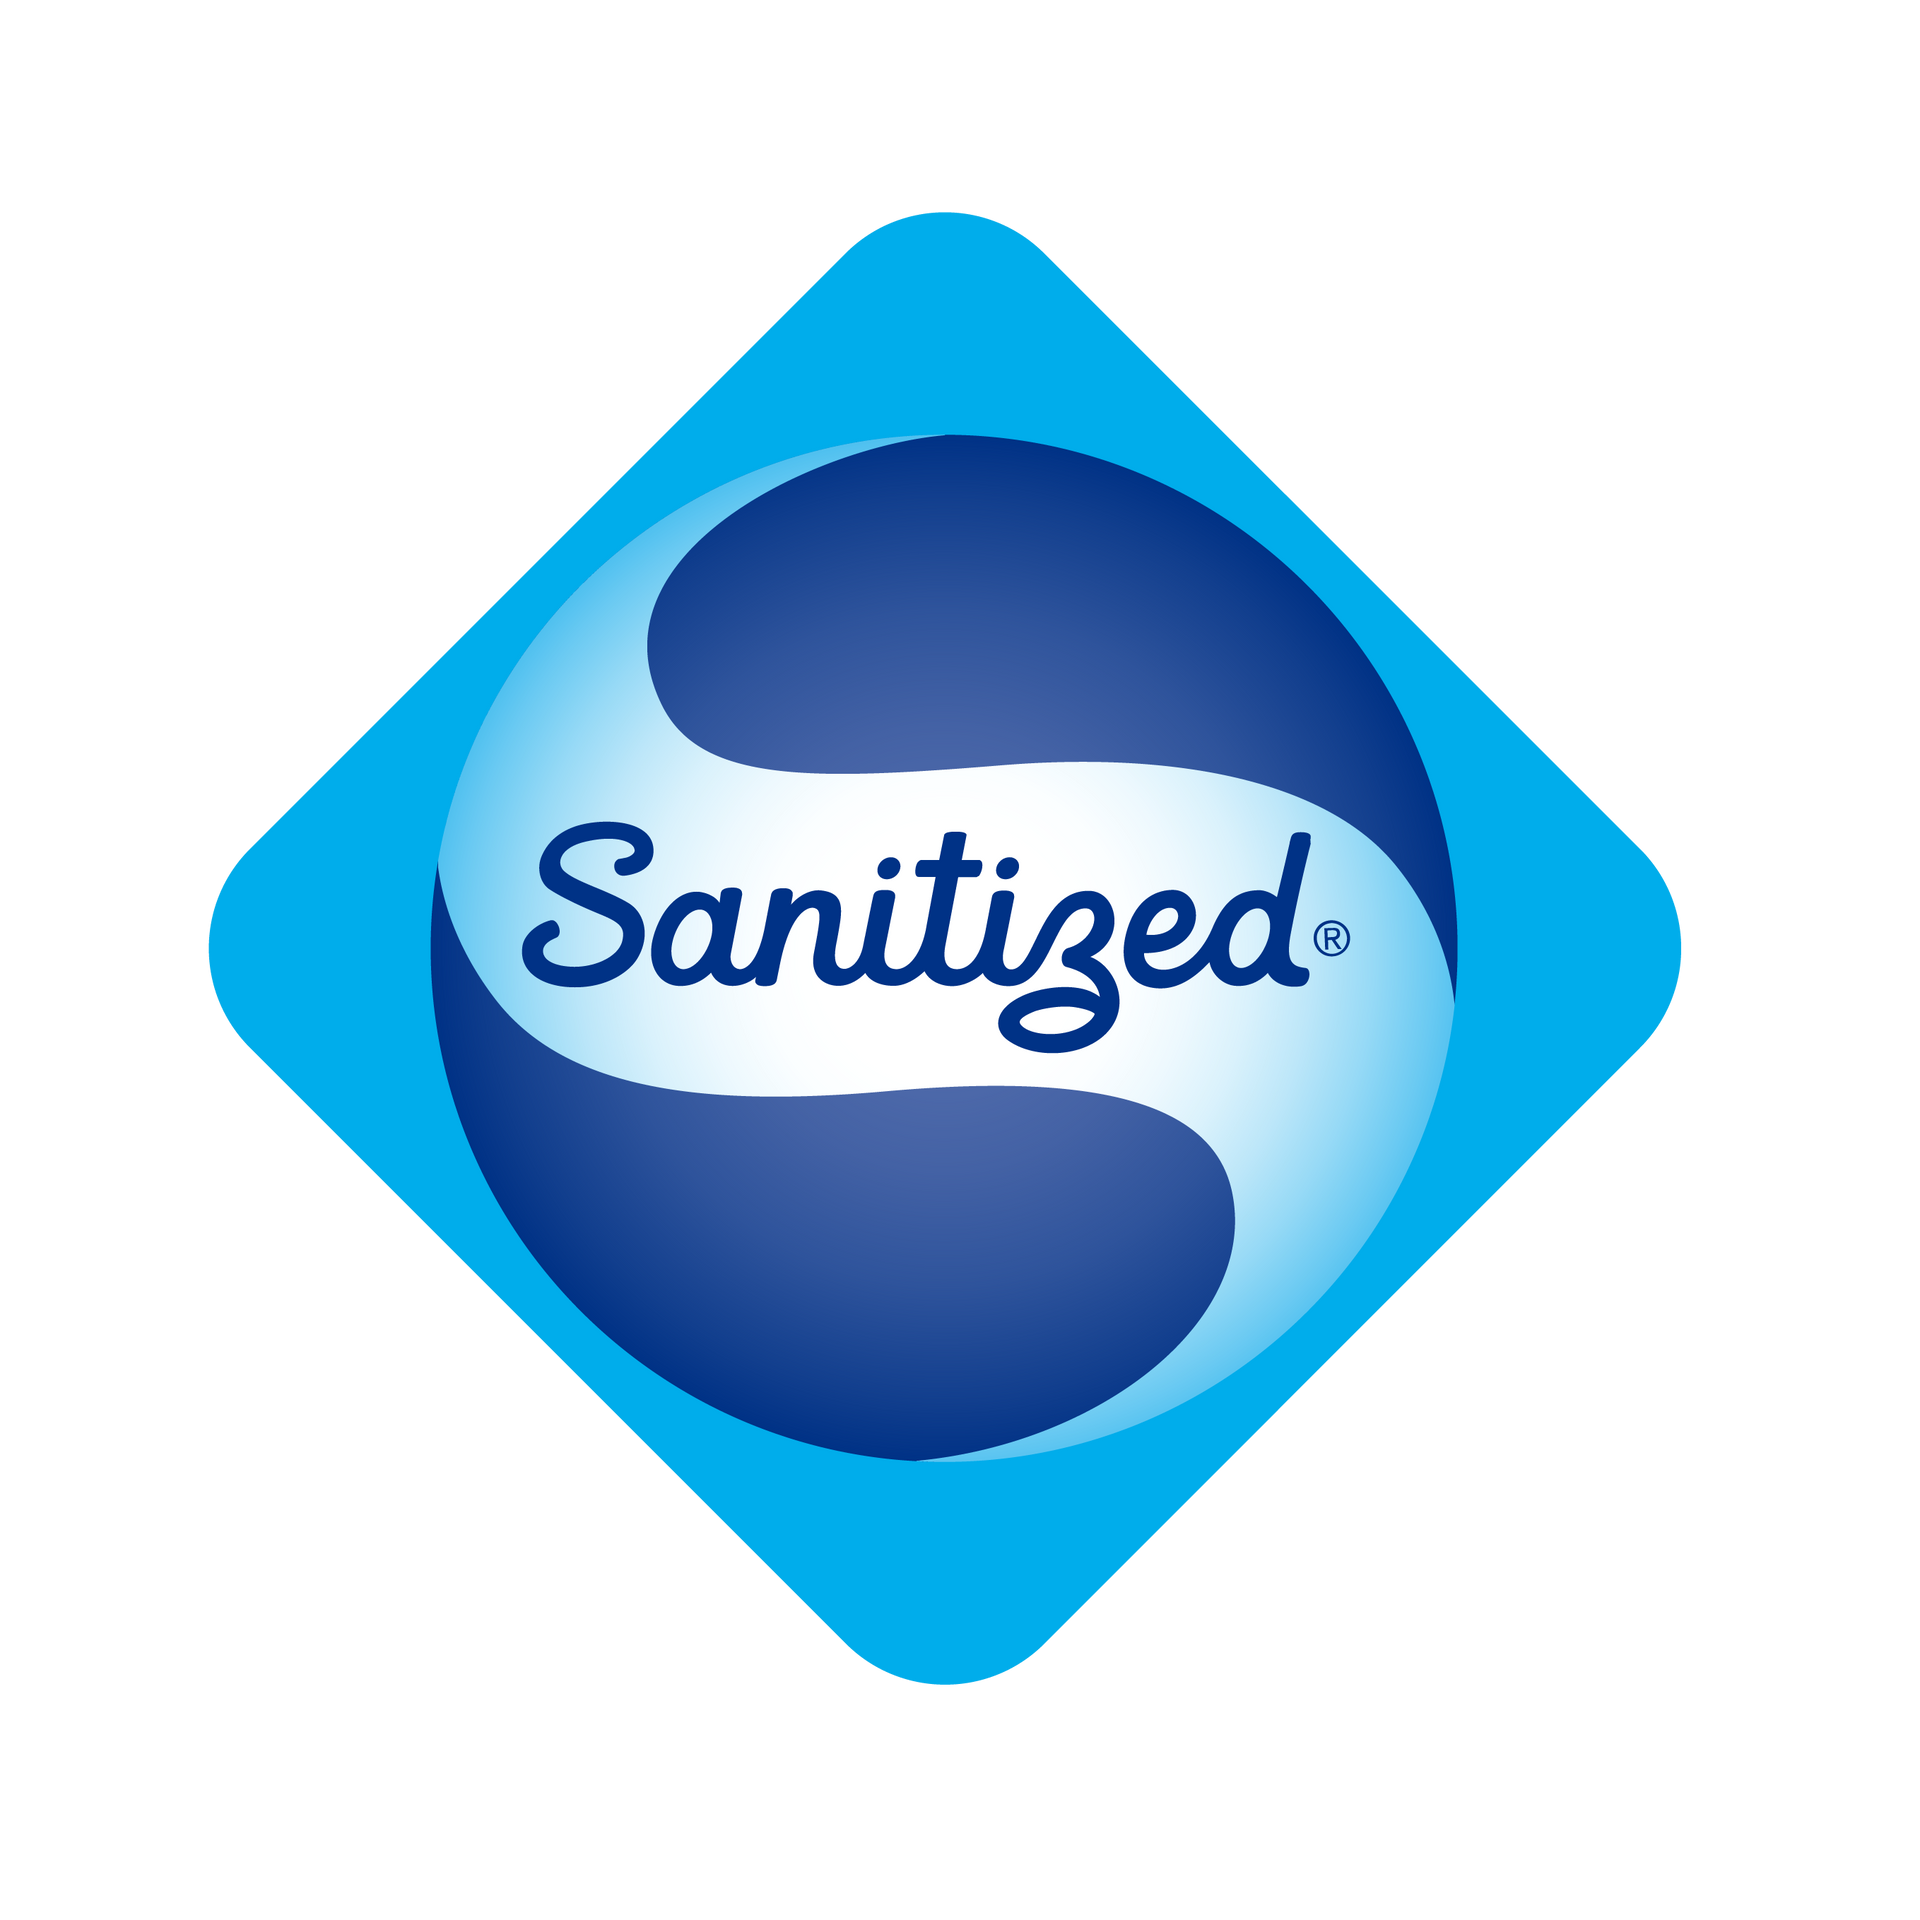 Un logotipo desinfectado azul y blanco sobre un fondo blanco.